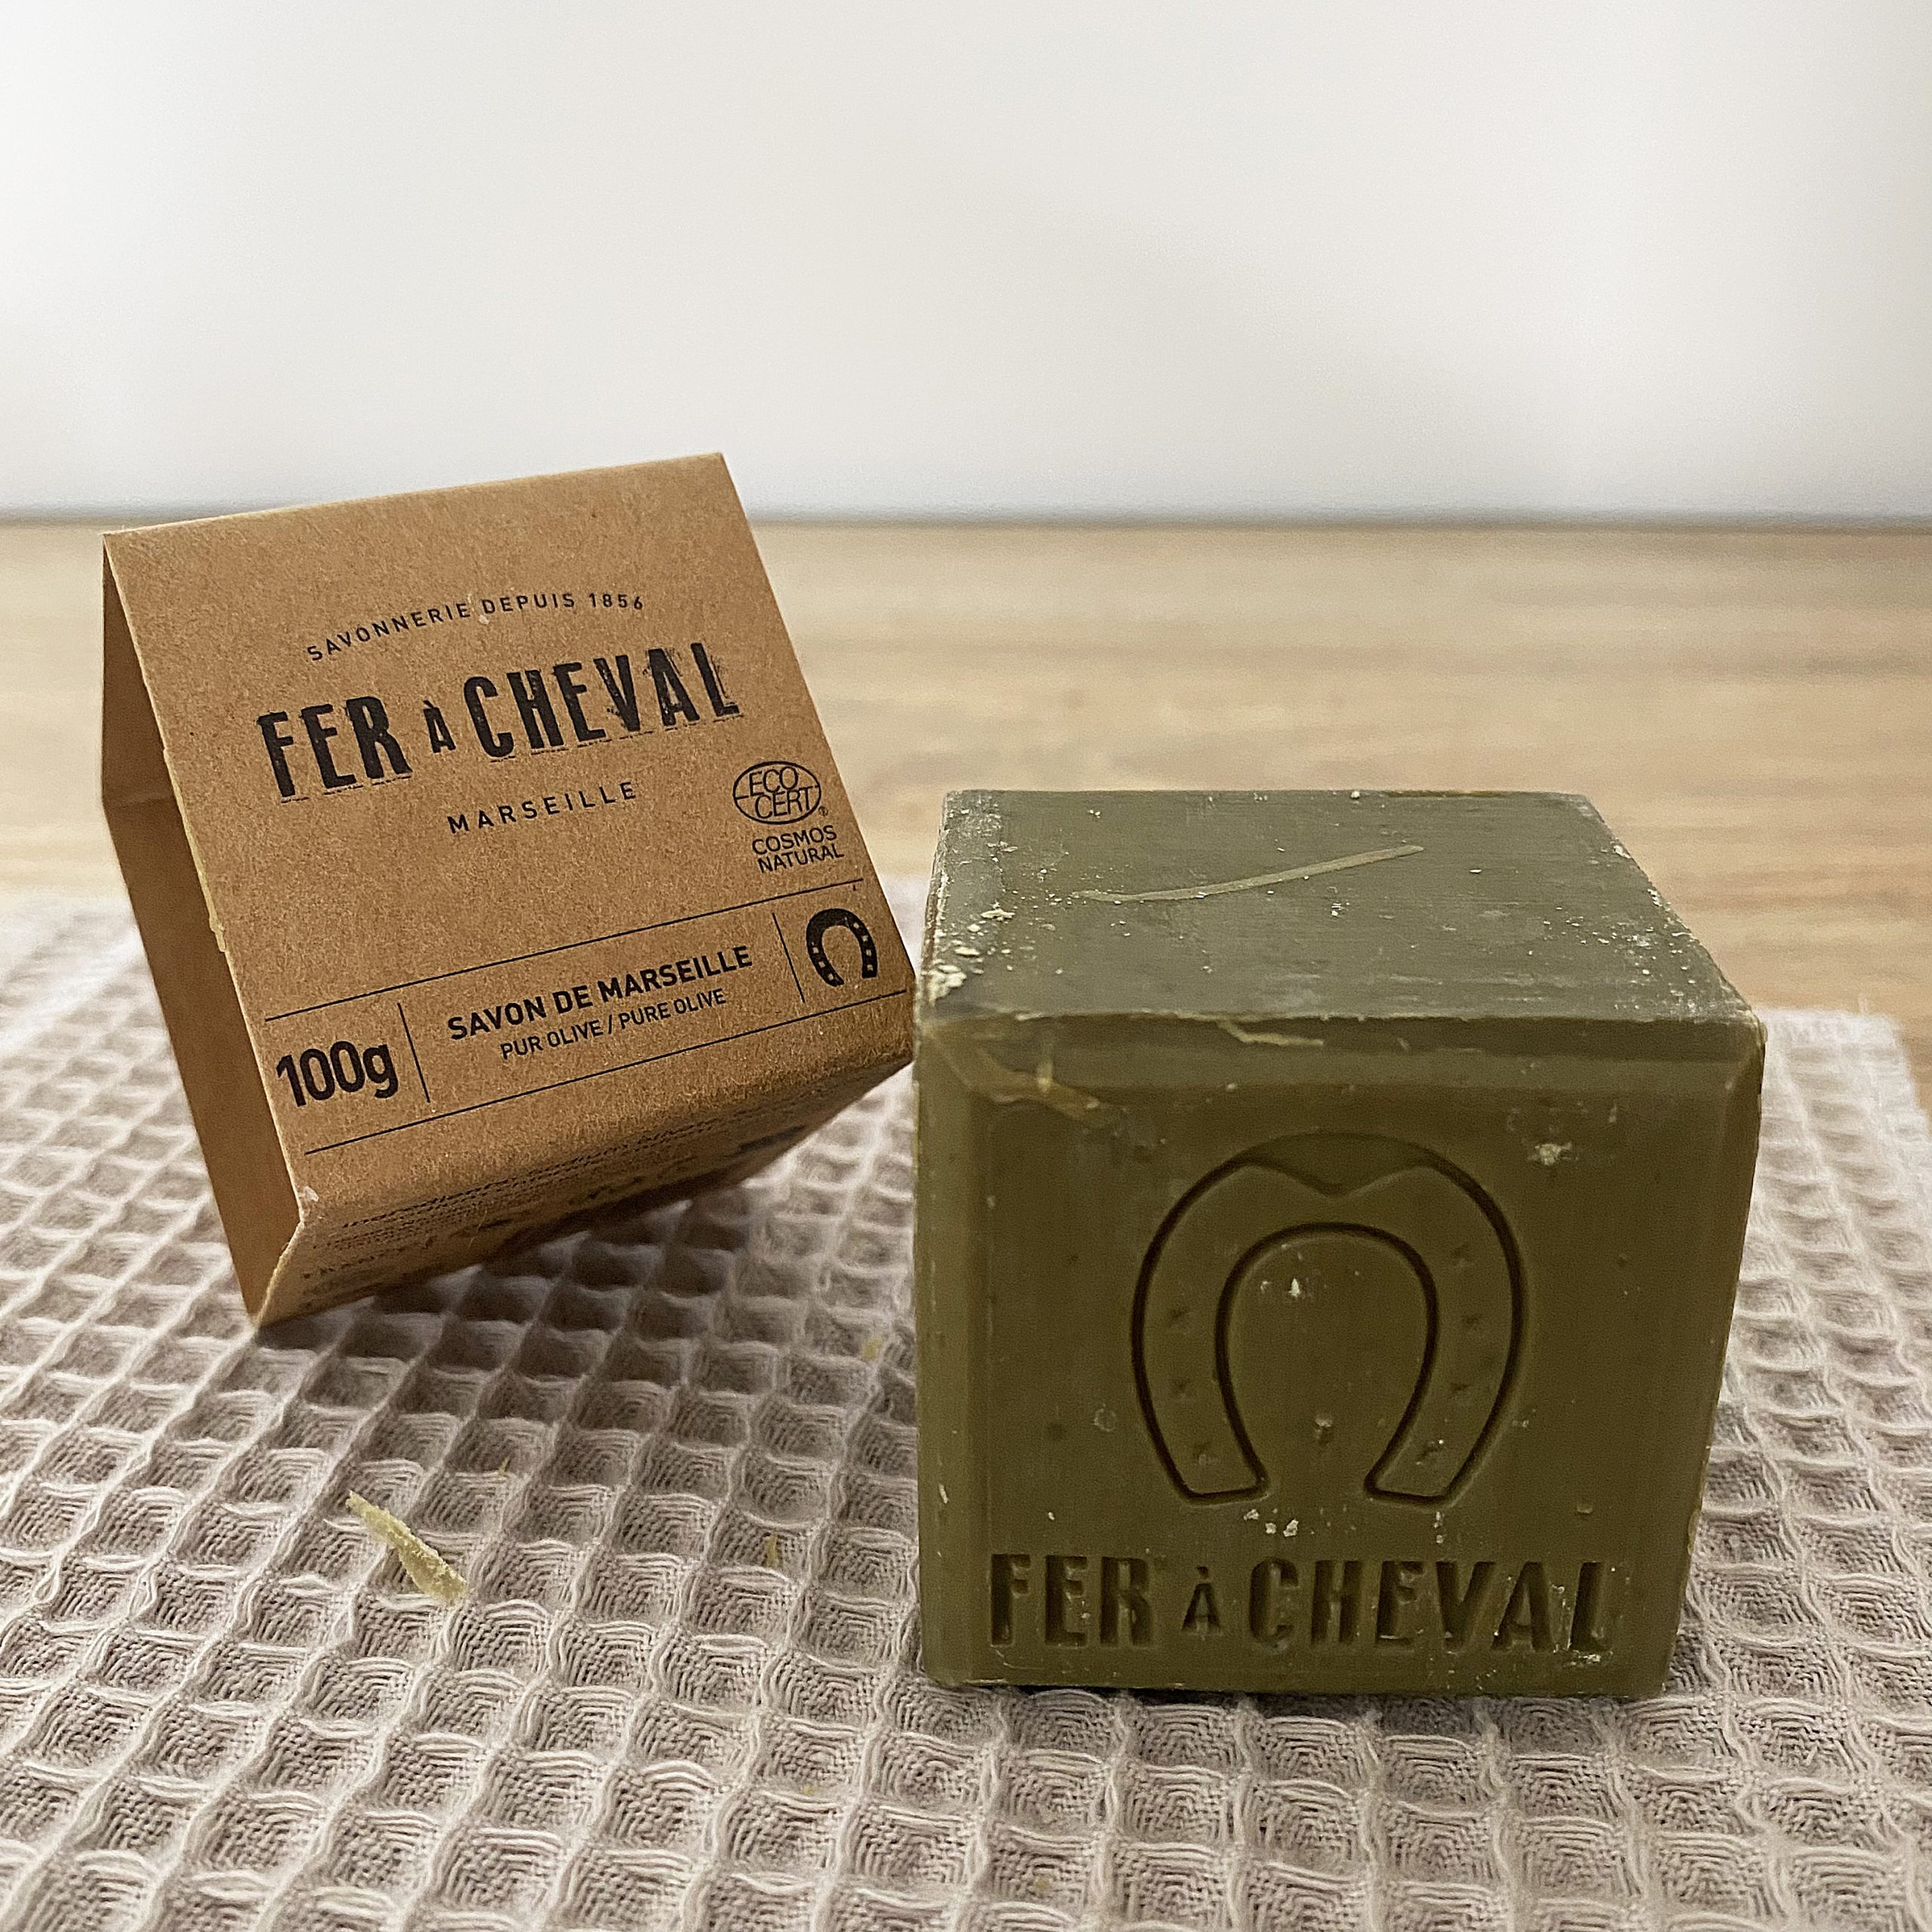 Véritable Cube de savon de Marseille sans huile de palme - 100g